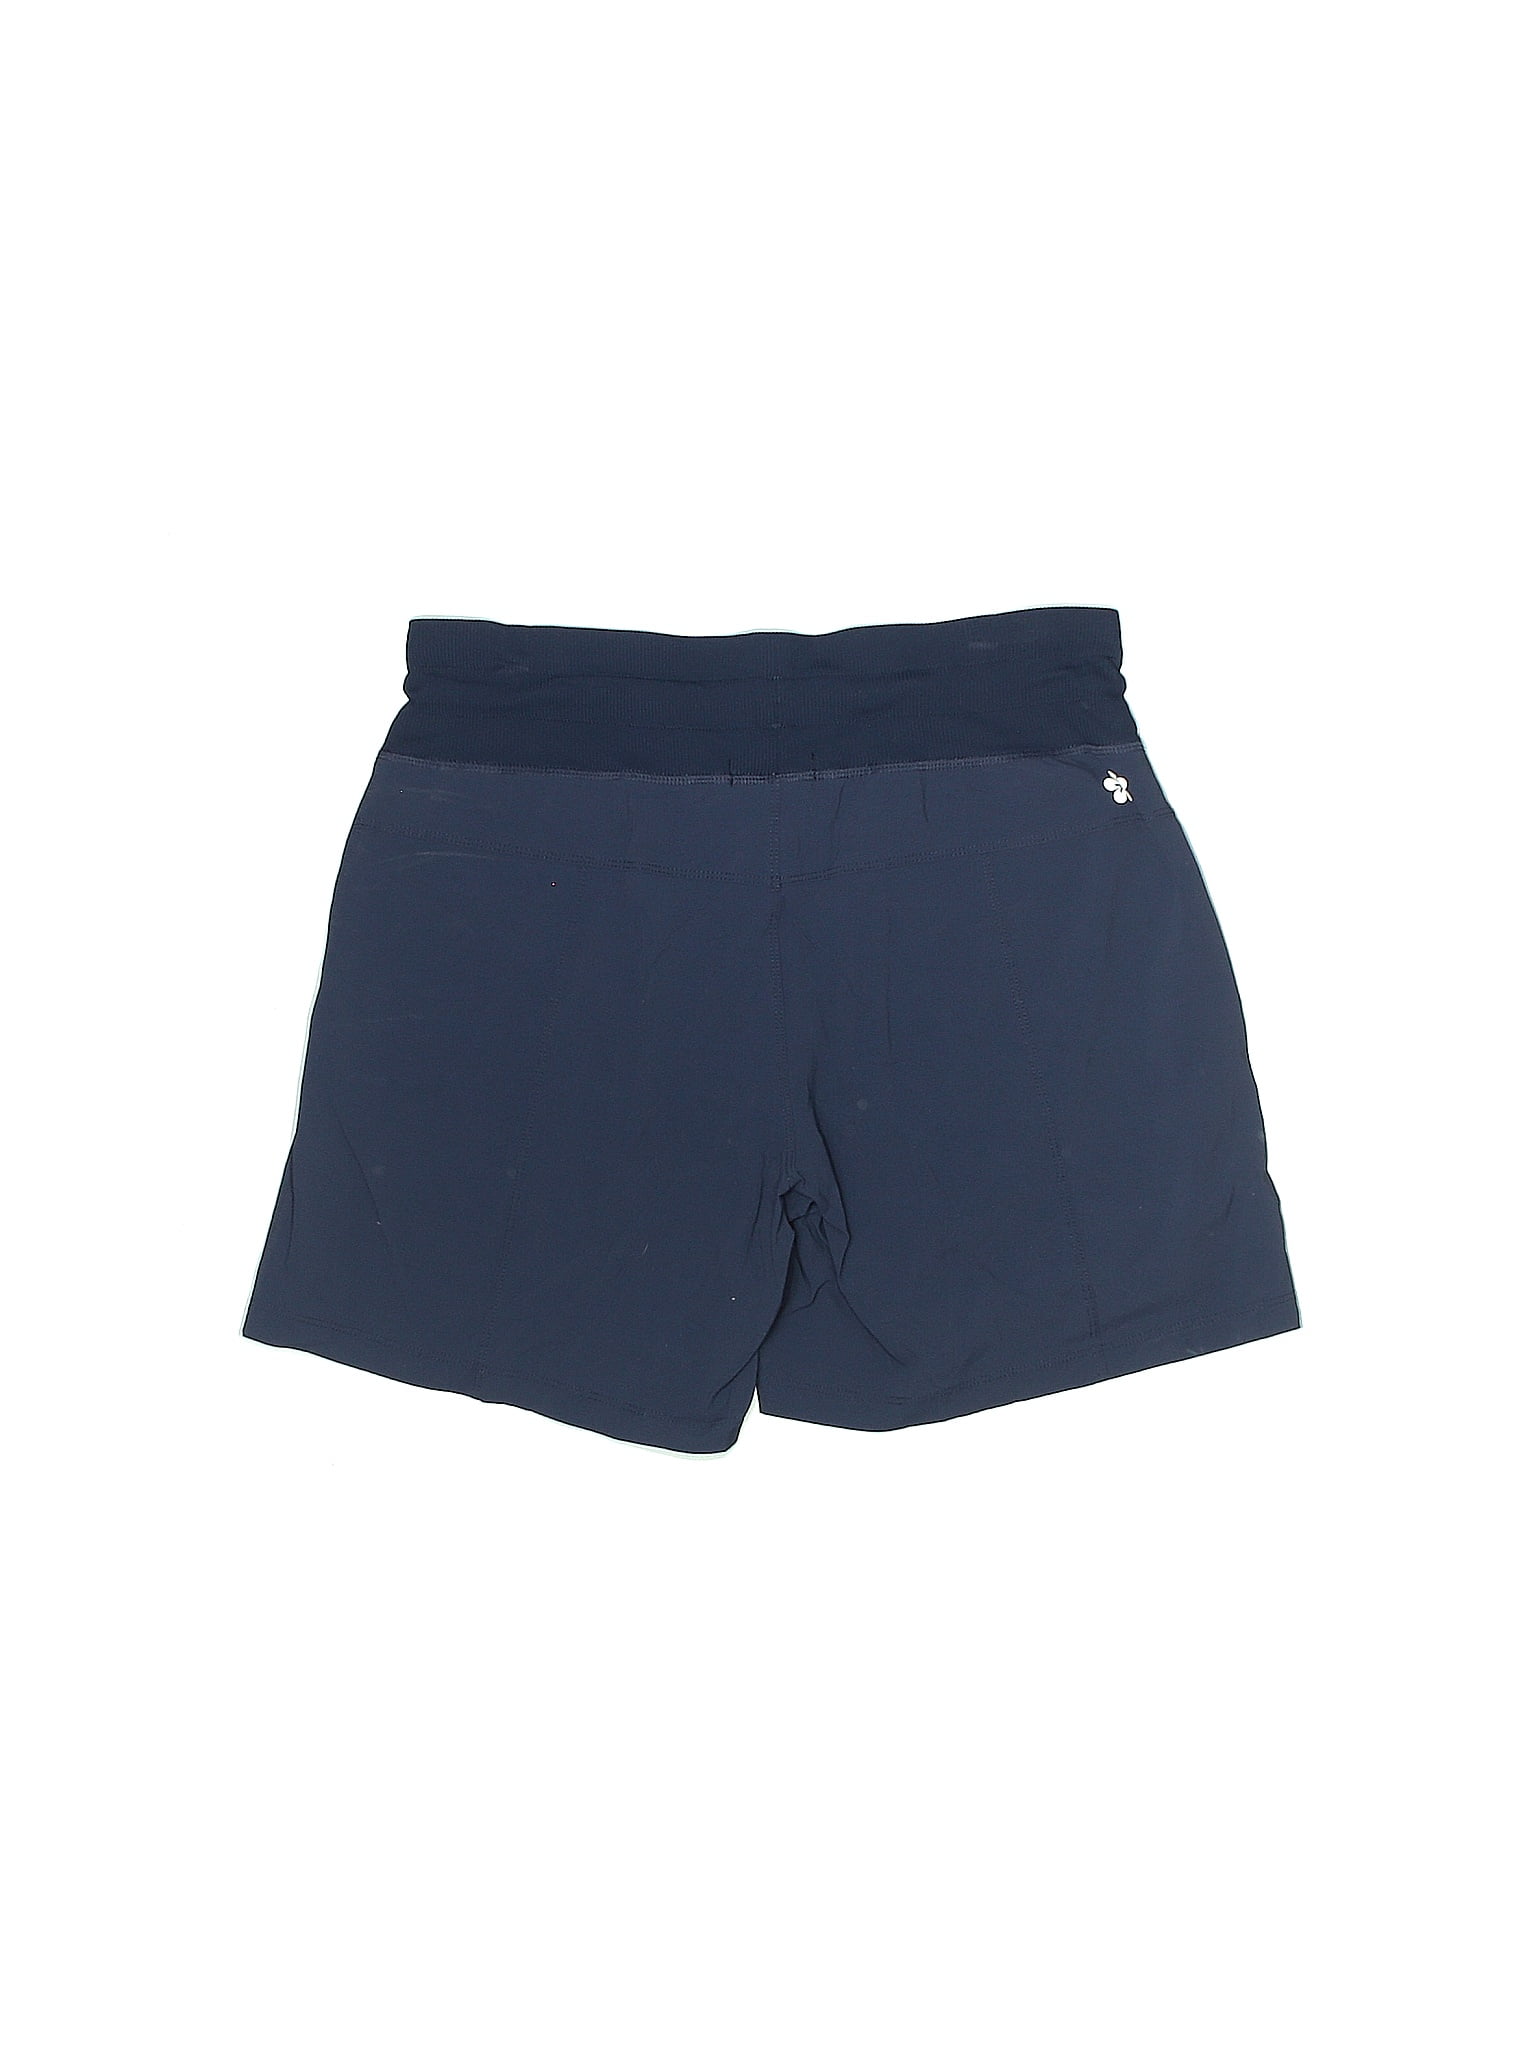 Tuff Athletics Blue Athletic Shorts Size S - 56% off